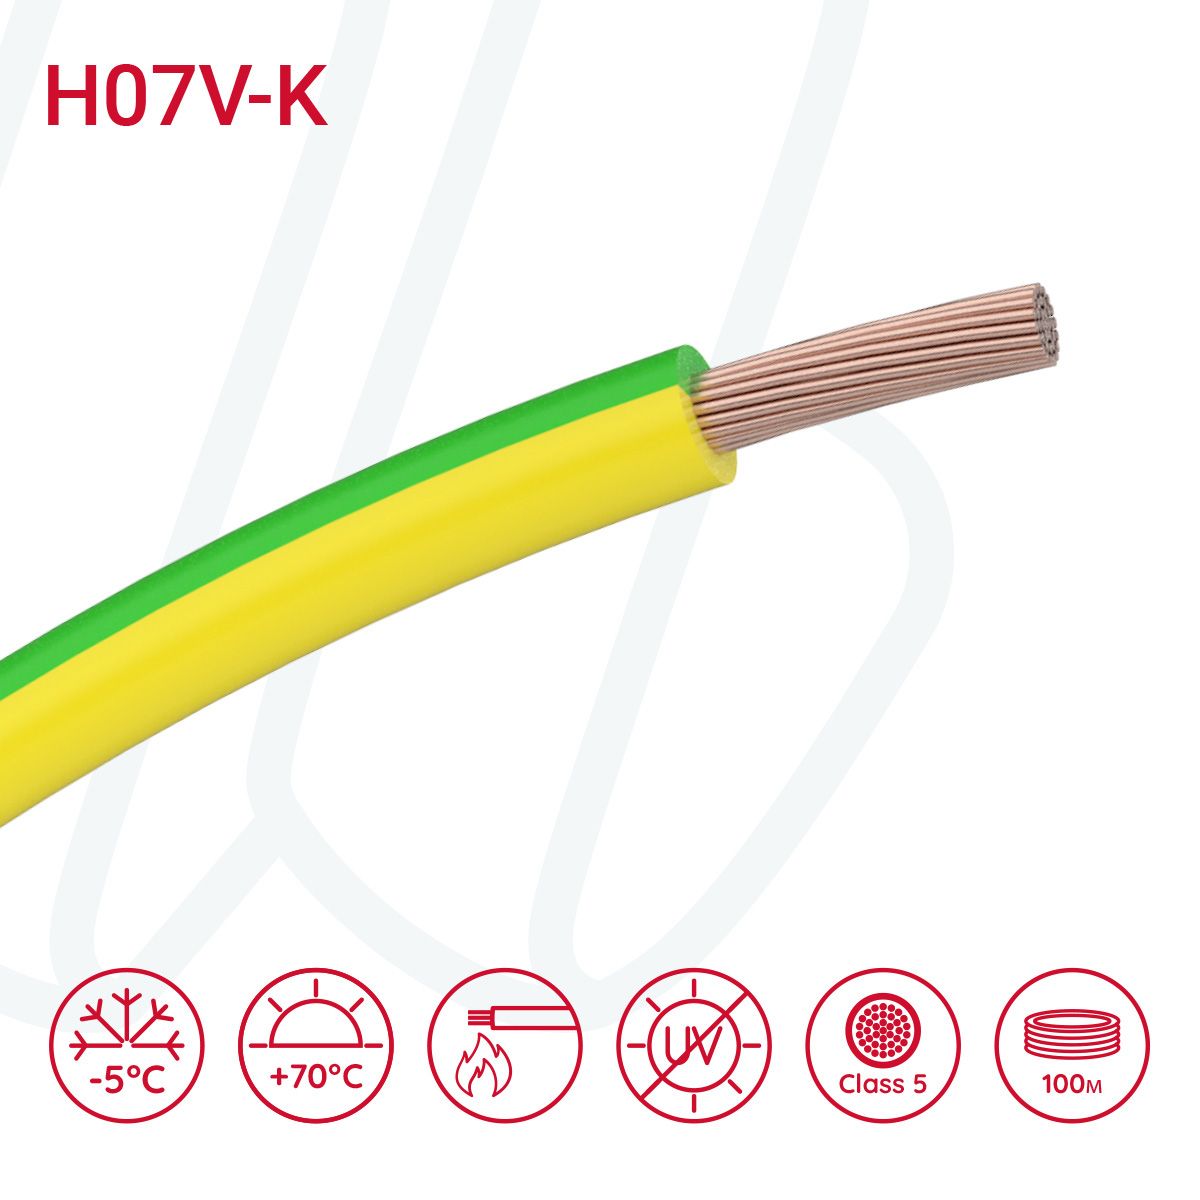 Провід монтажний гнучкий H07V-K 1.5 мм² жовто-зелений, 01, 1.5